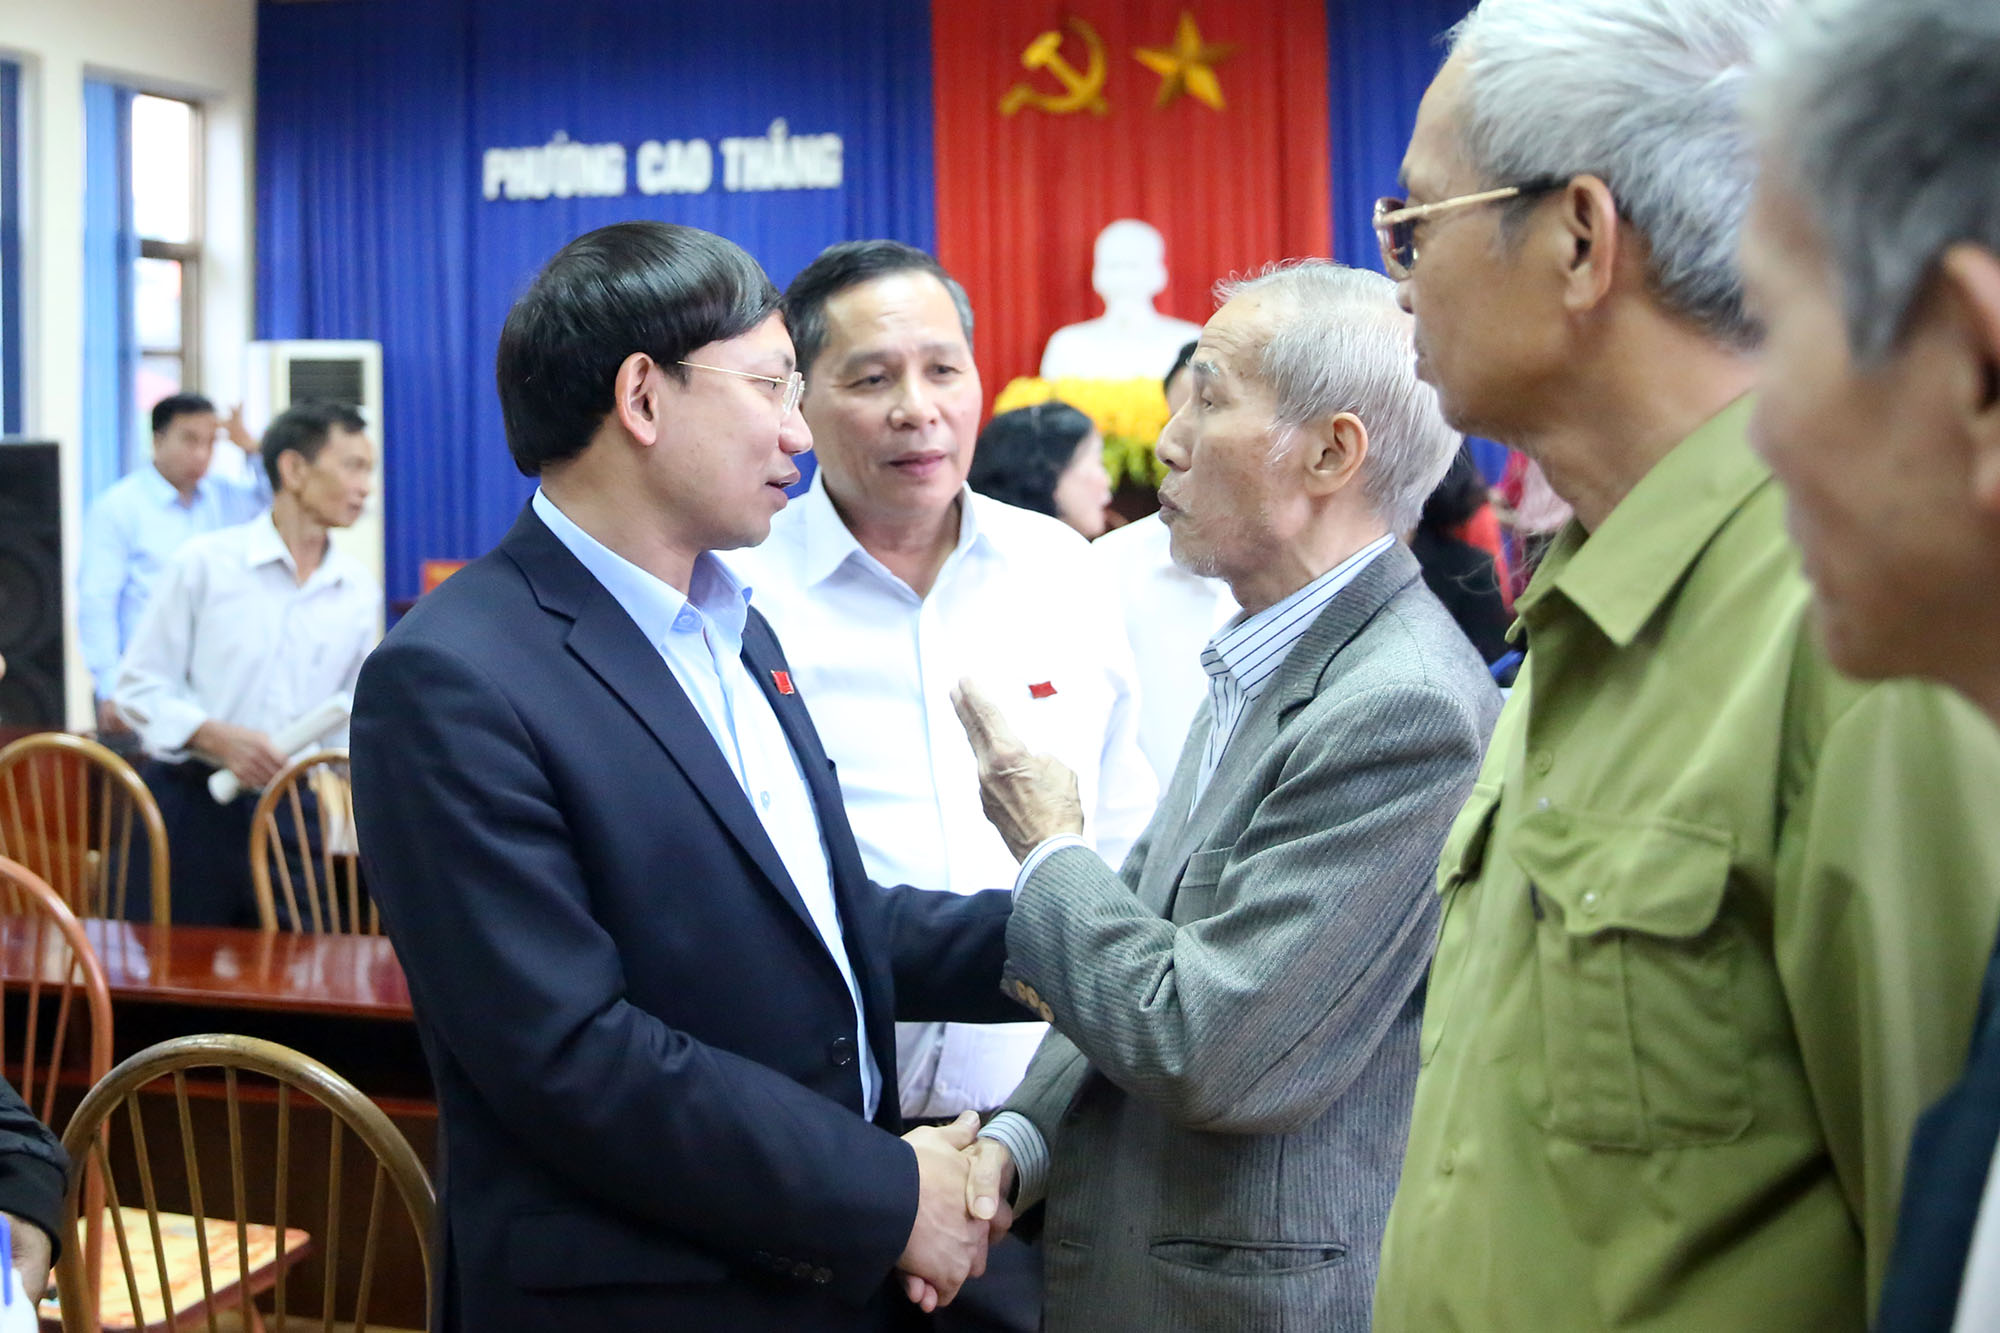 Đồng chí Nguyễn Xuân Ký, Bí thư Tỉnh ủy, Chủ tịch HĐND tỉnh trò chuyện với cử tri 2 phường Cao Thắng và Hà Lầm.